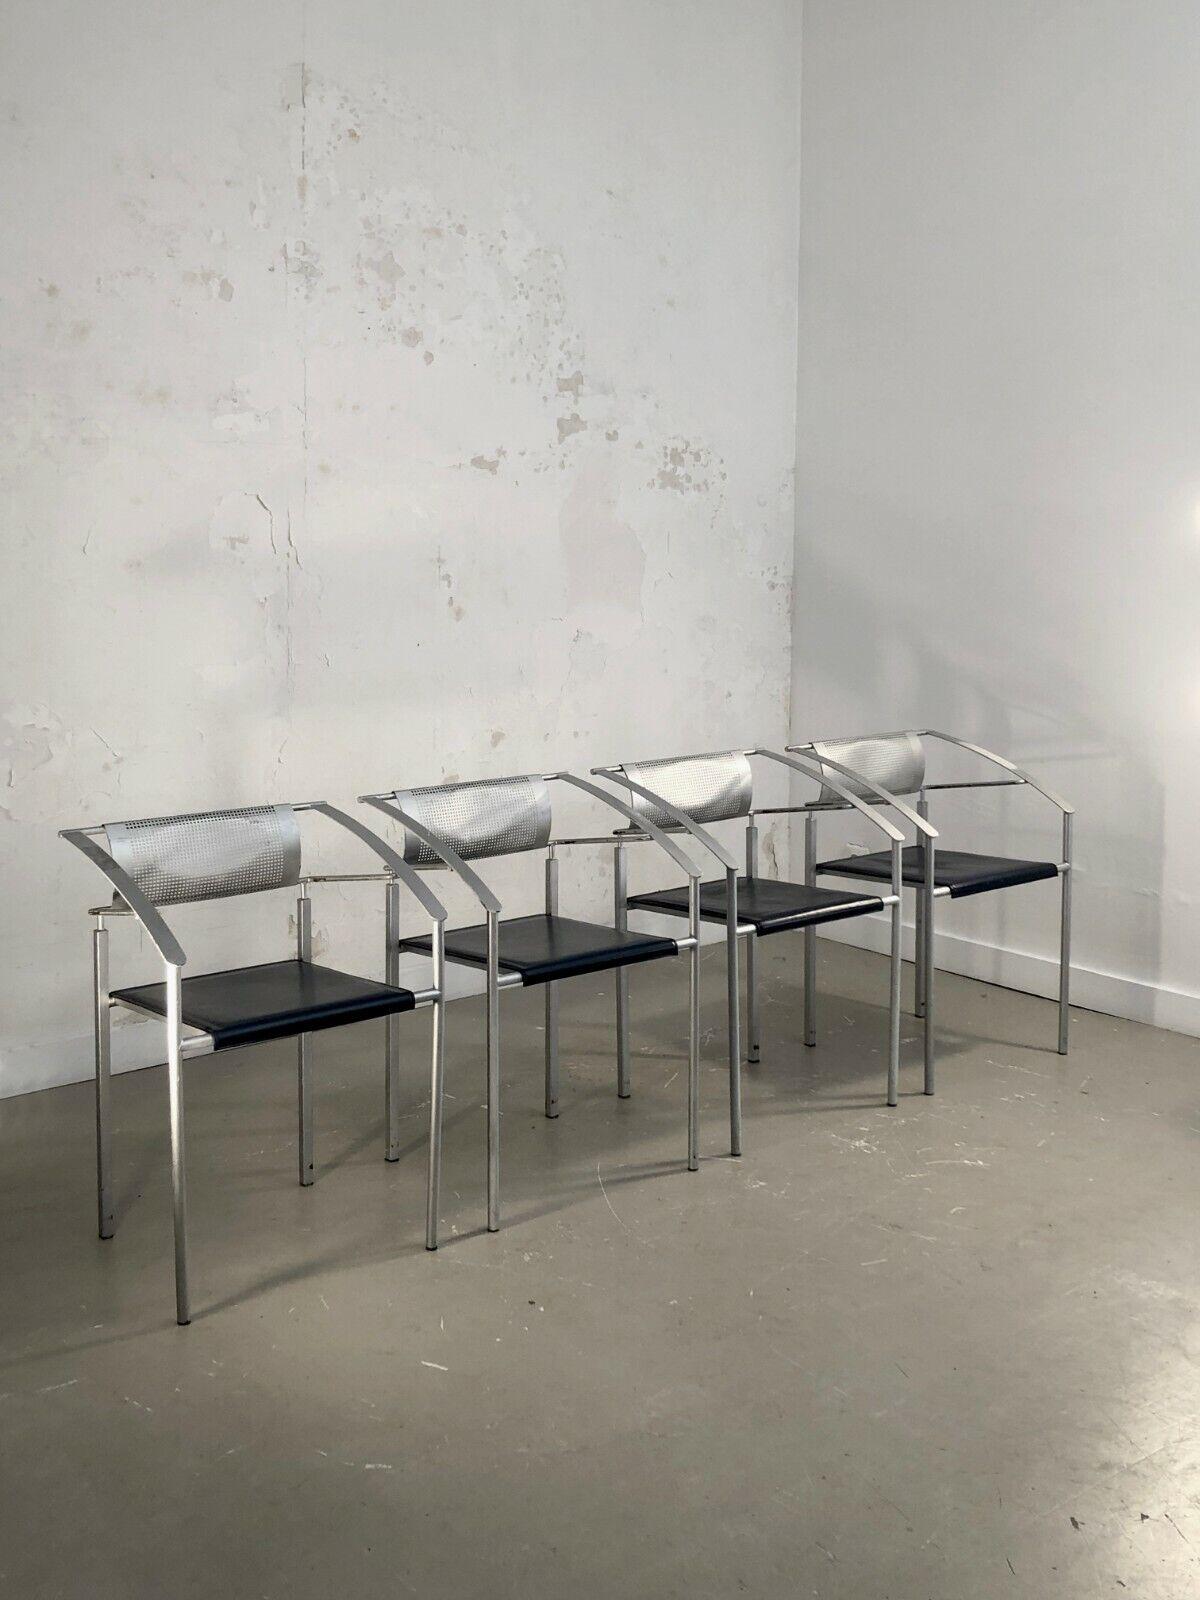 Ein Satz von 4 stapelbaren Stühlen, postmodernistisch, konstruktivistisch, Memphis, komplexe geometrische Strukturen aus metallgrauem Metall mit quadratischem Querschnitt, Sitze aus dunkelblauem Leder, Rückenlehne aus perforiertem Metall, Edition